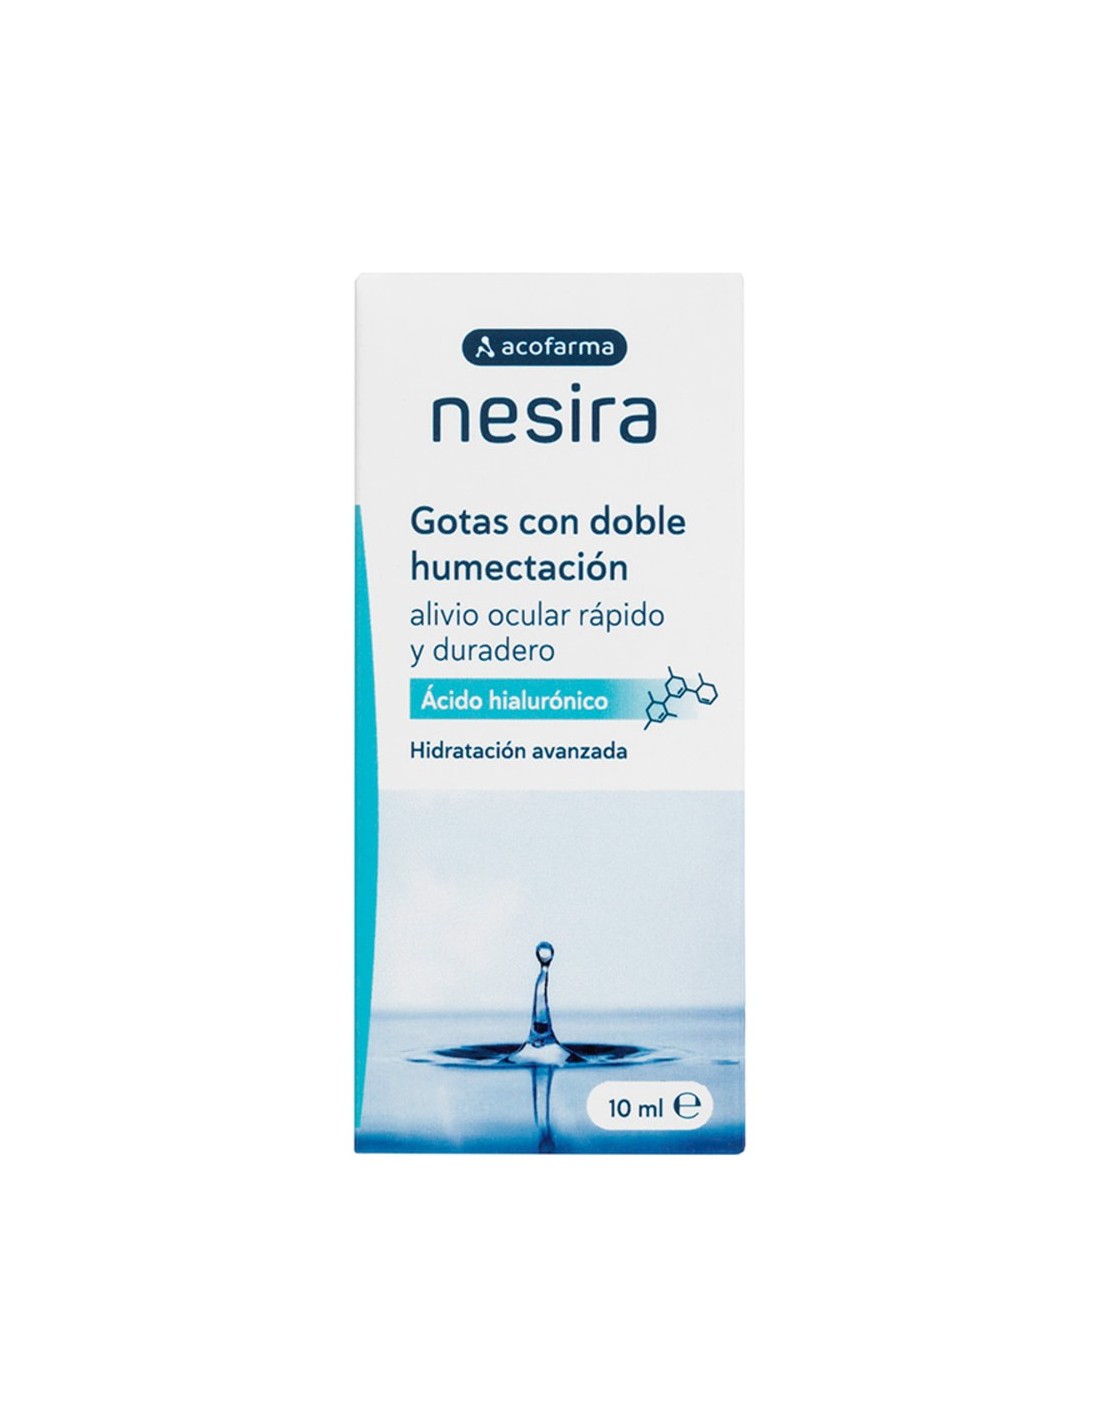 Las nuevas gotas hidratantes de Nesira